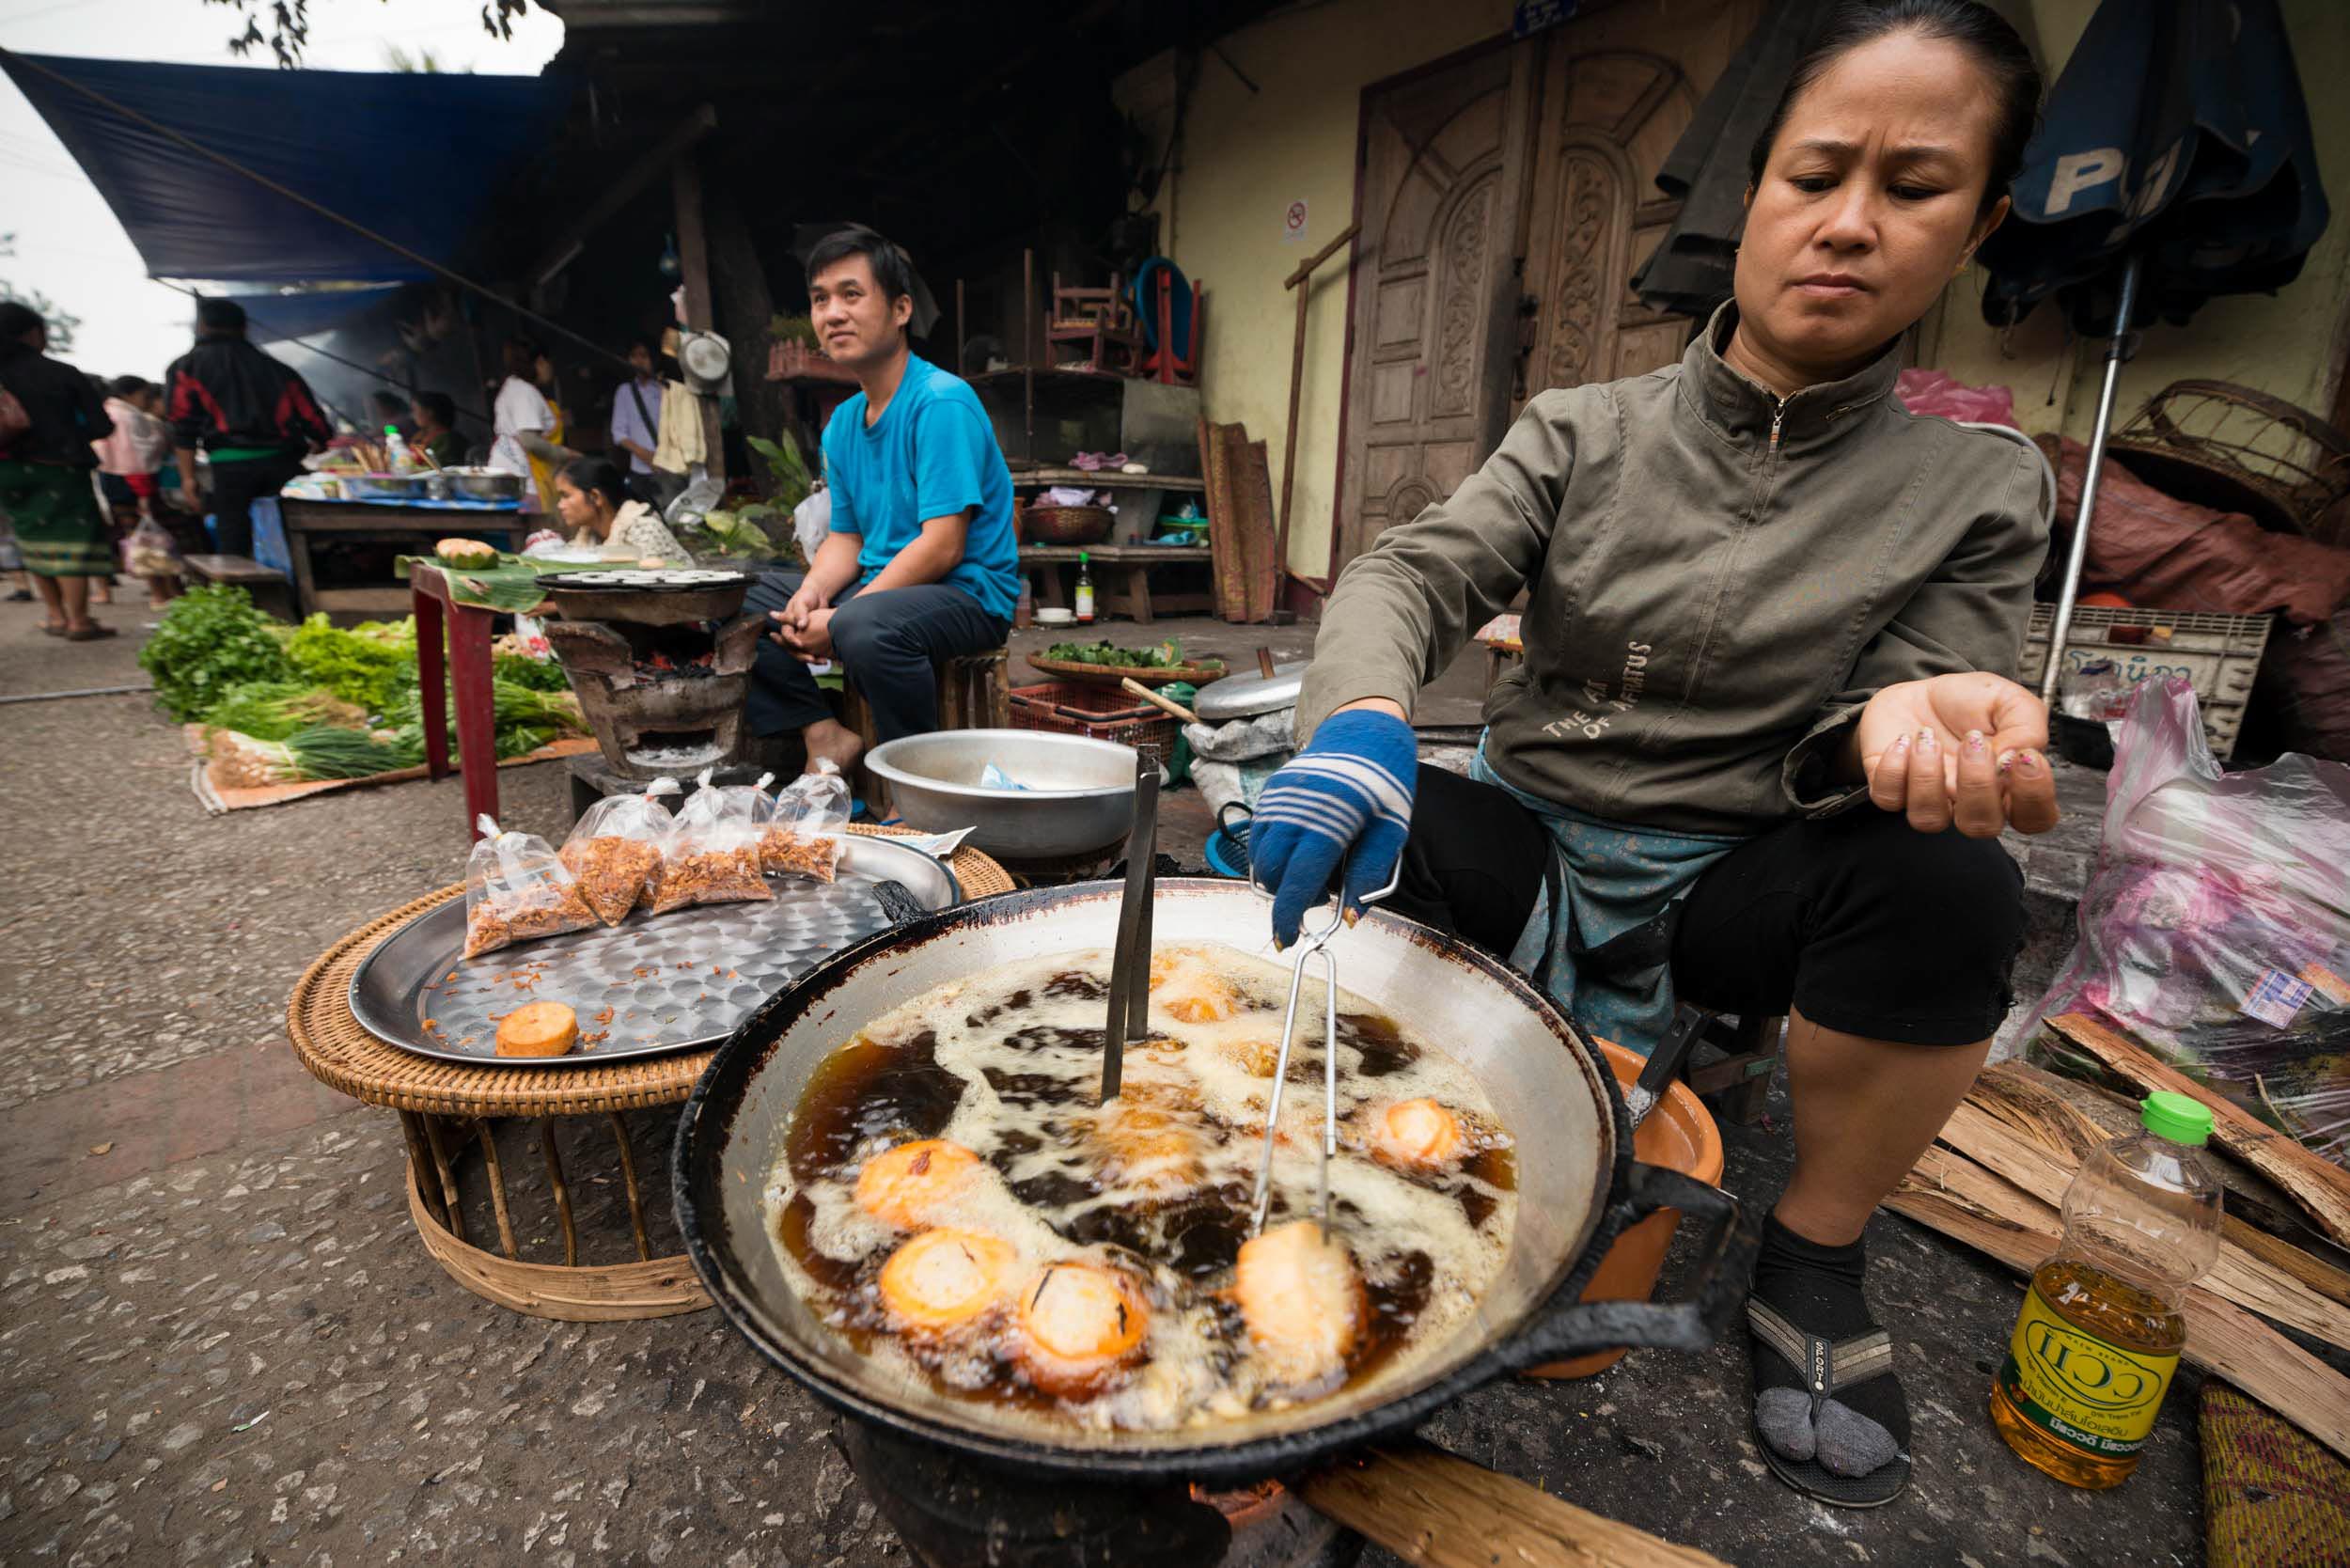 snack-deep-fried-local-market-woman-luang-prabang-laos-asia-food